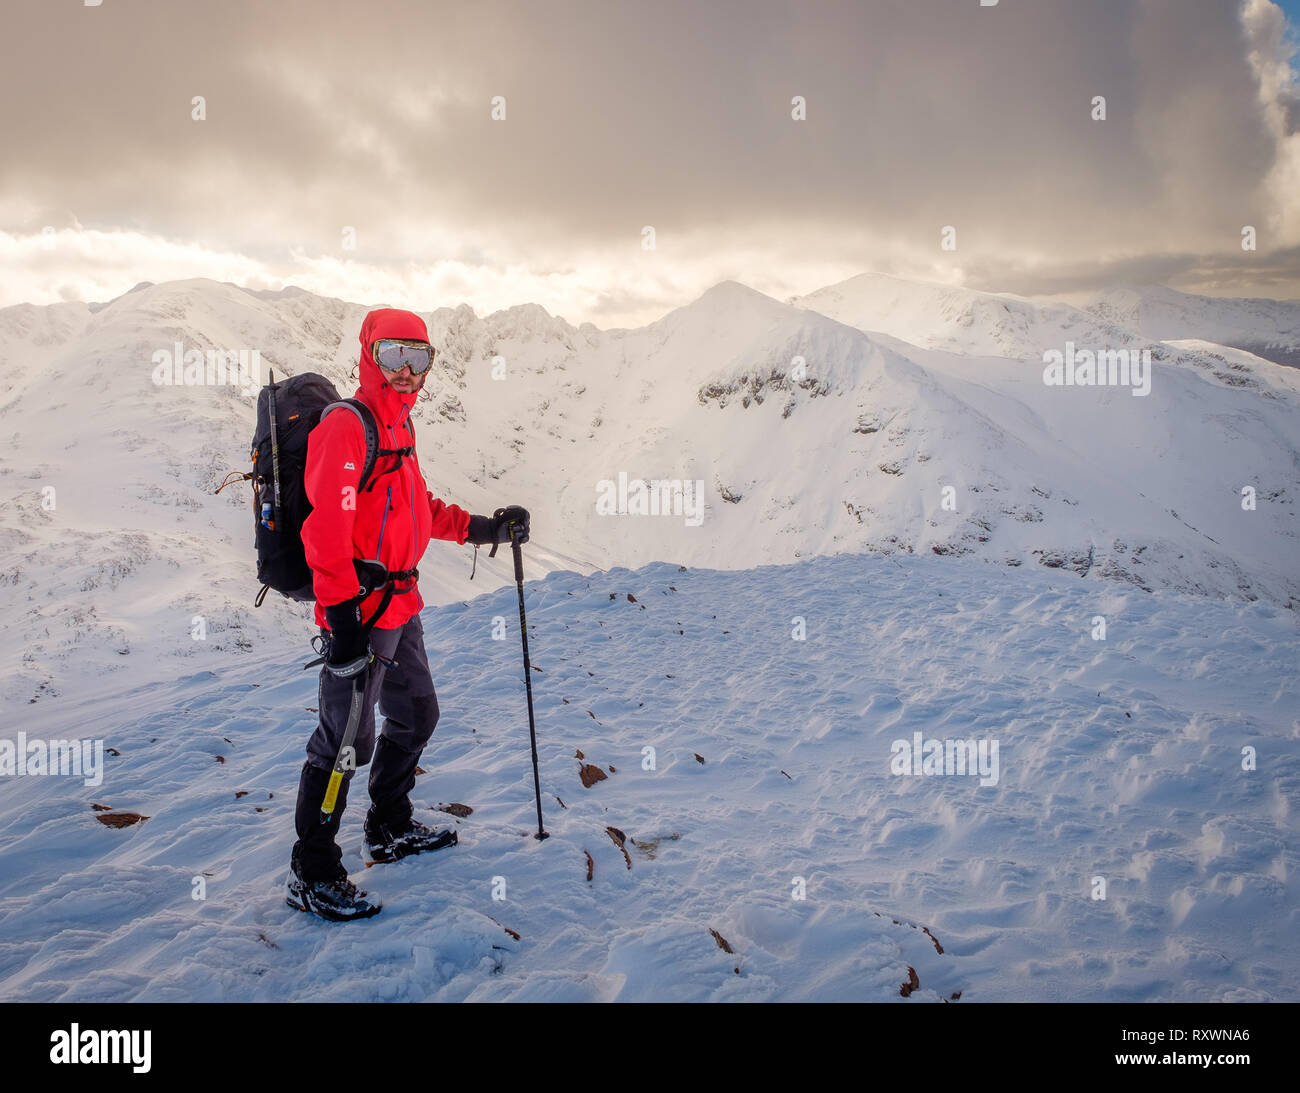 Mann im roten Mantel, mit Eispickel Wandern/Klettern im Winter auf Schnee bedeckten Berg in Schottland. Model Release - garbh Bheinn, Loch Leven Highlands Stockfoto